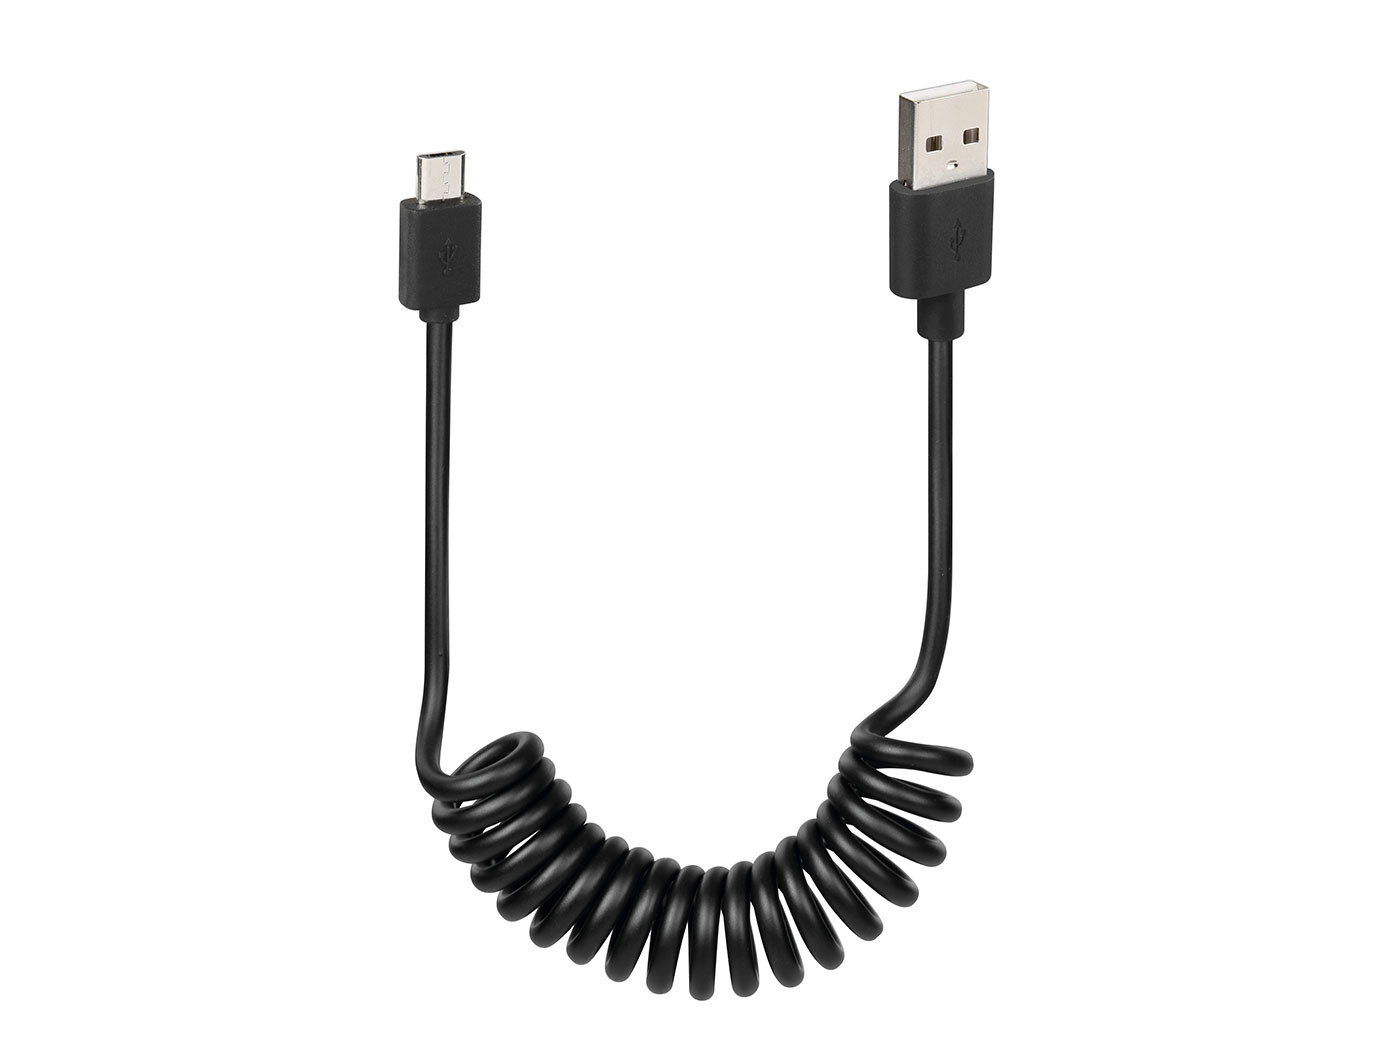 USB spirális kábel / töltőkábel micro USB 100cm fekete